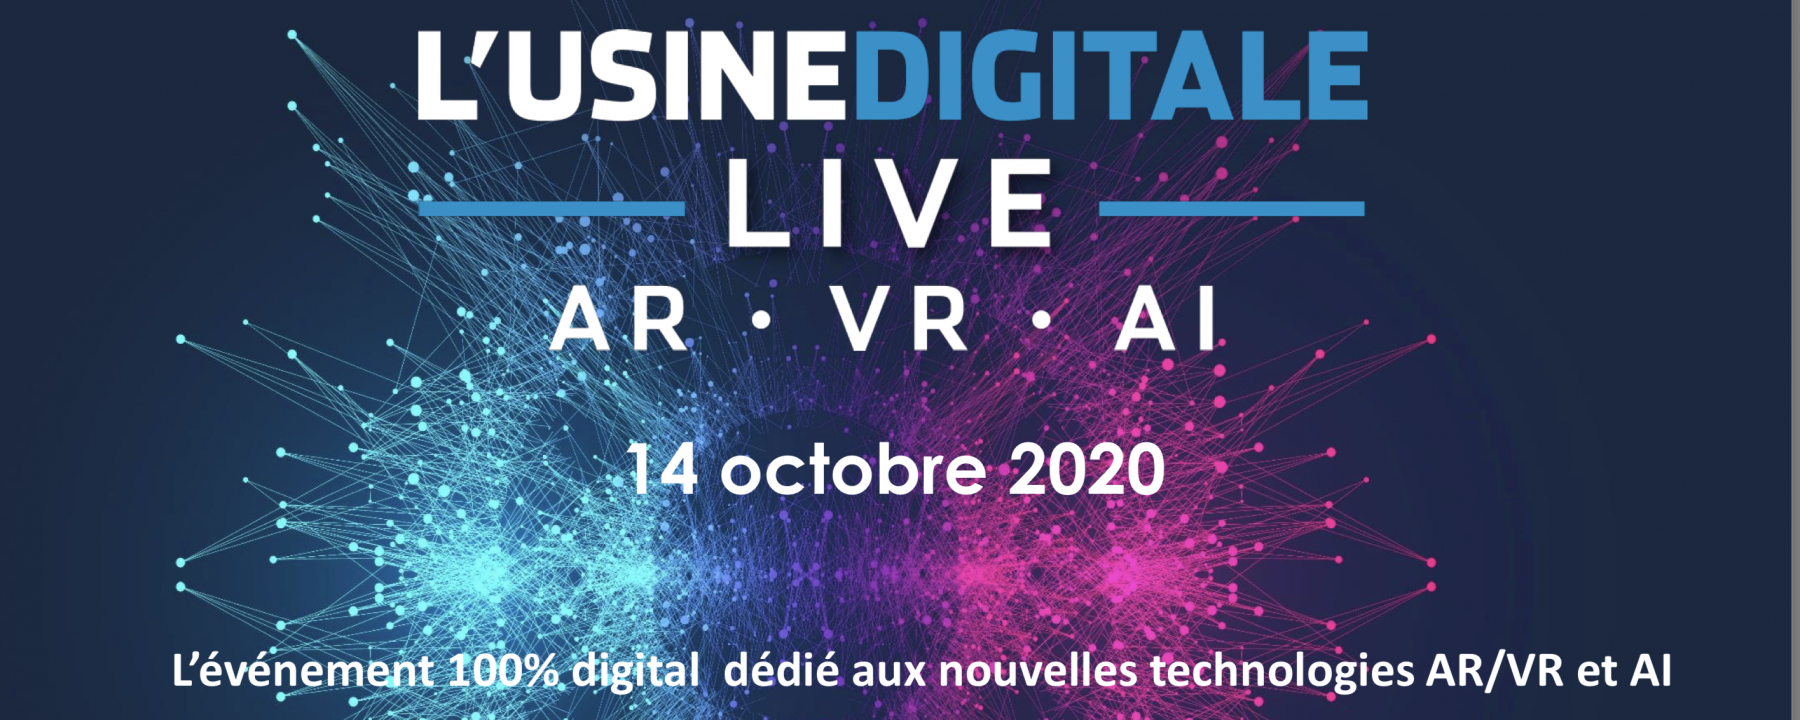 UD Live 2020 organisé par L'Usine Digitale le 14 octobre 2020 